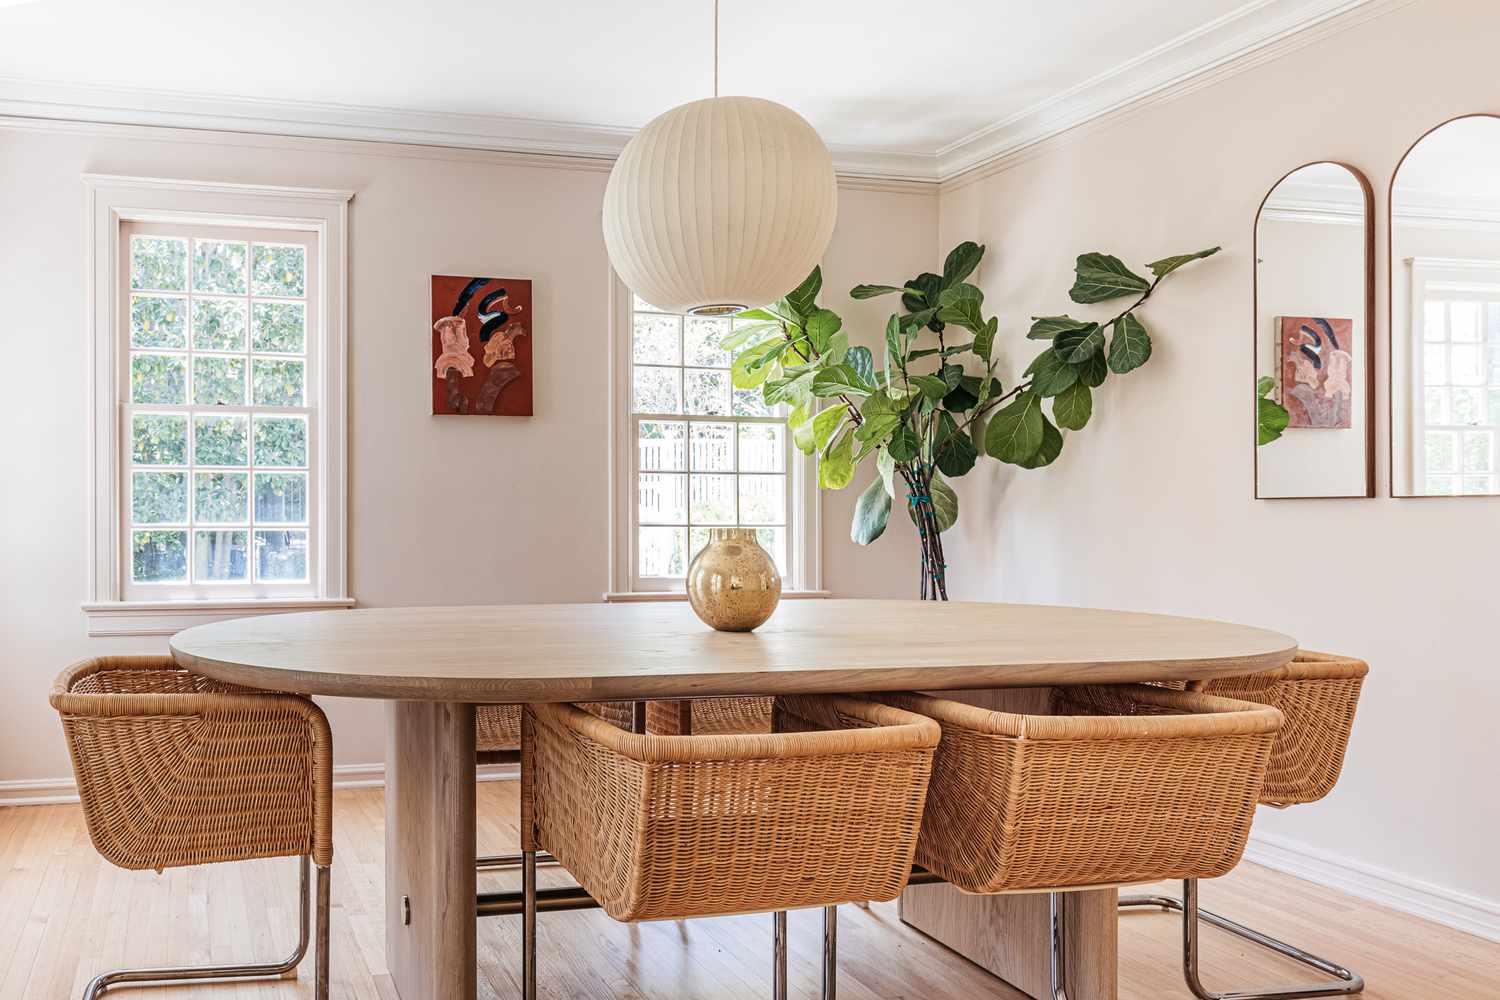 Esszimmer mit in neutralem Beige gestrichenen Wänden, ovalem Tisch und Korbstühlen in der Mitte